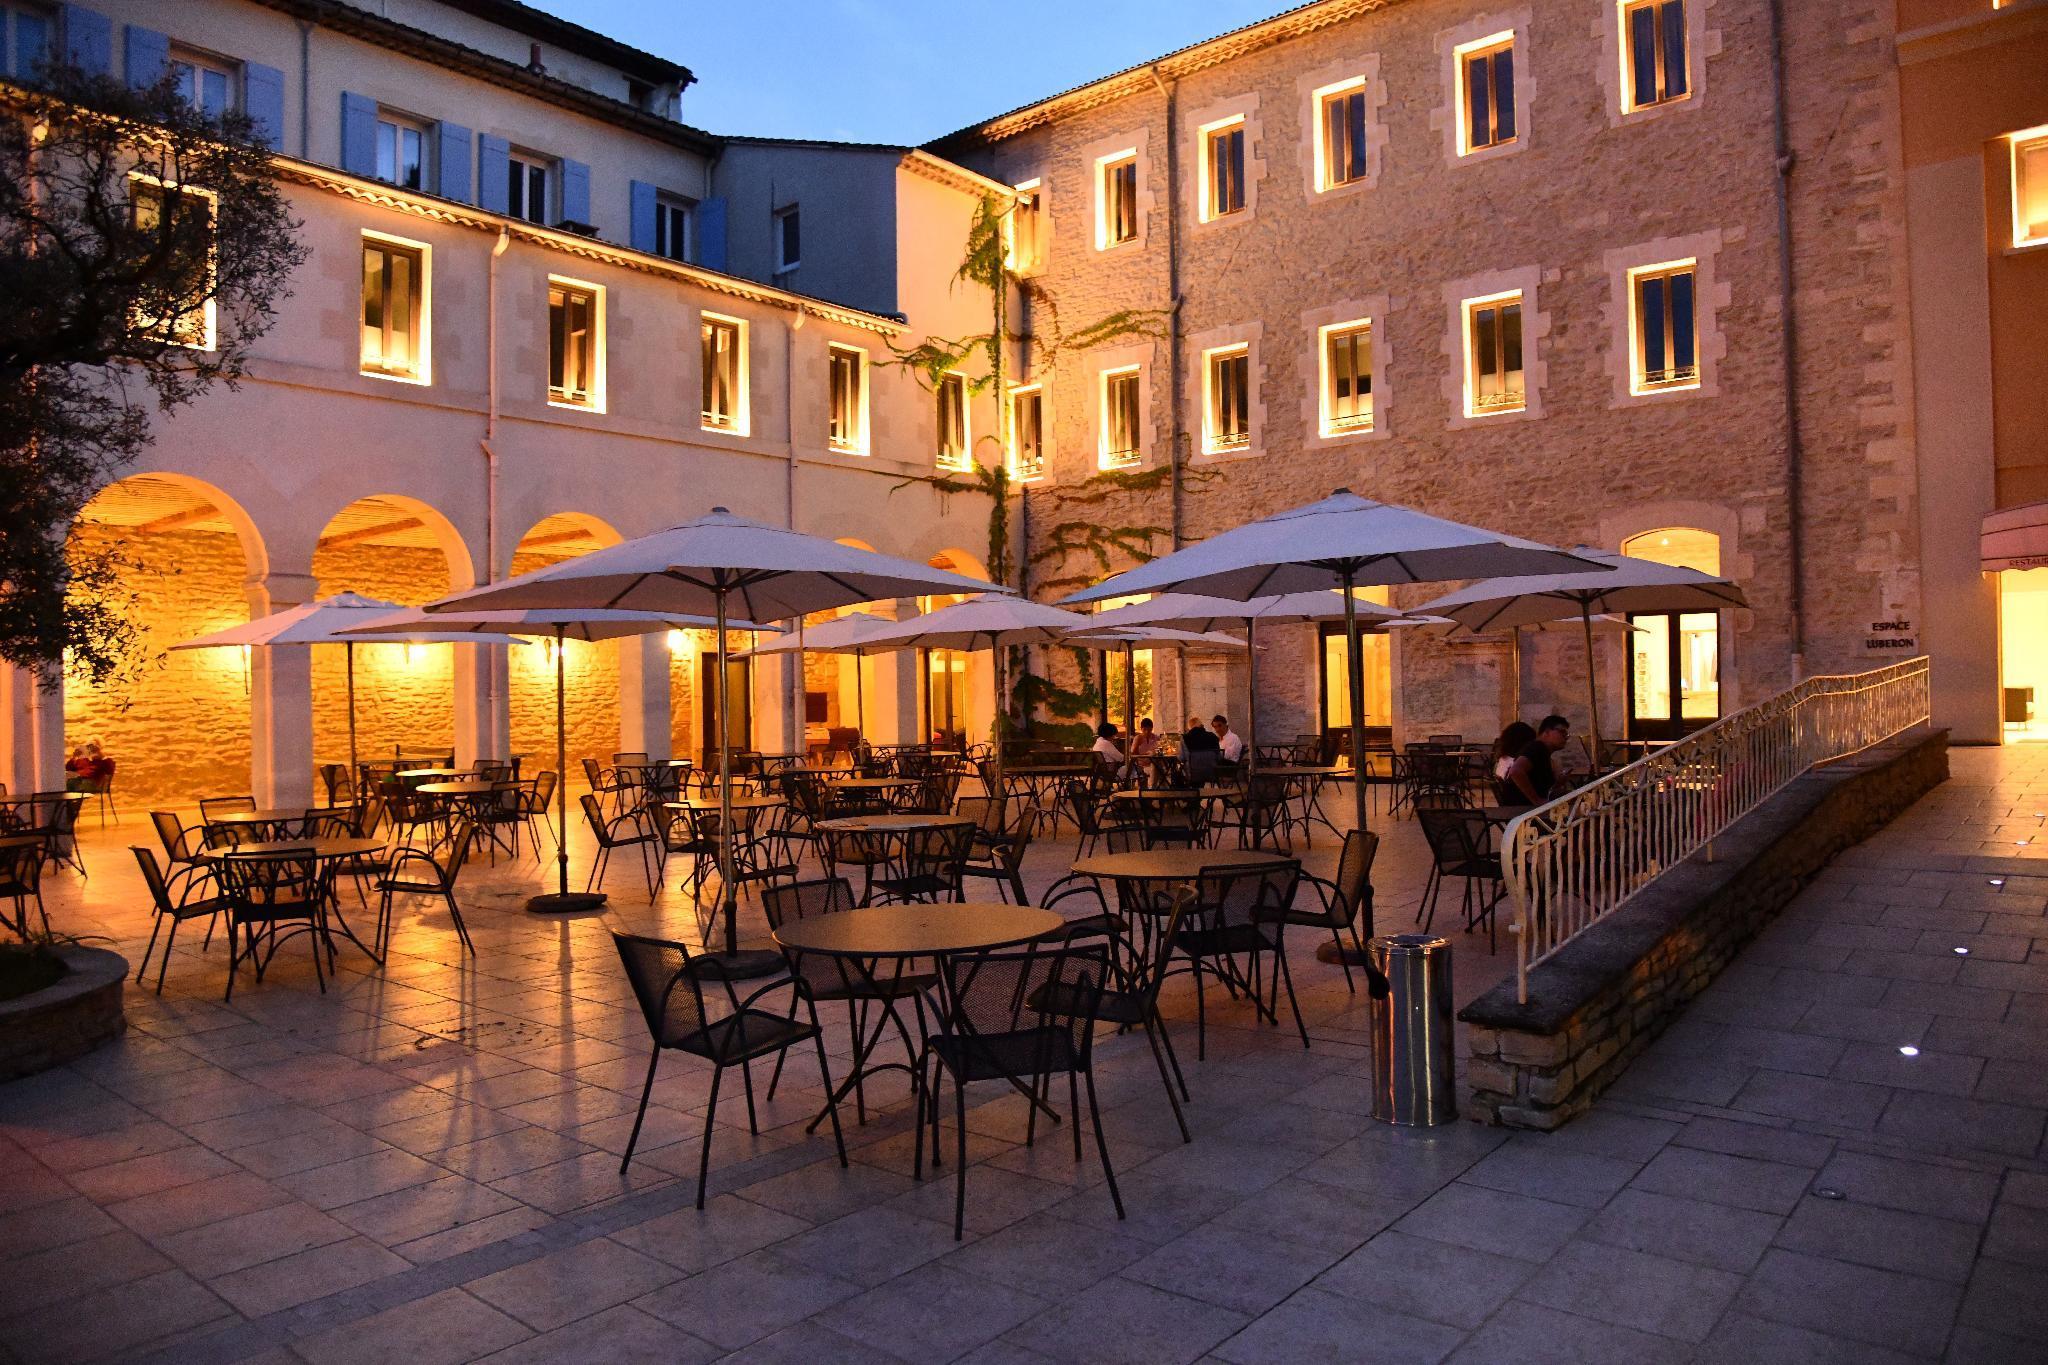 Hotellerie Notre Dame De Lumieres - Roussillon